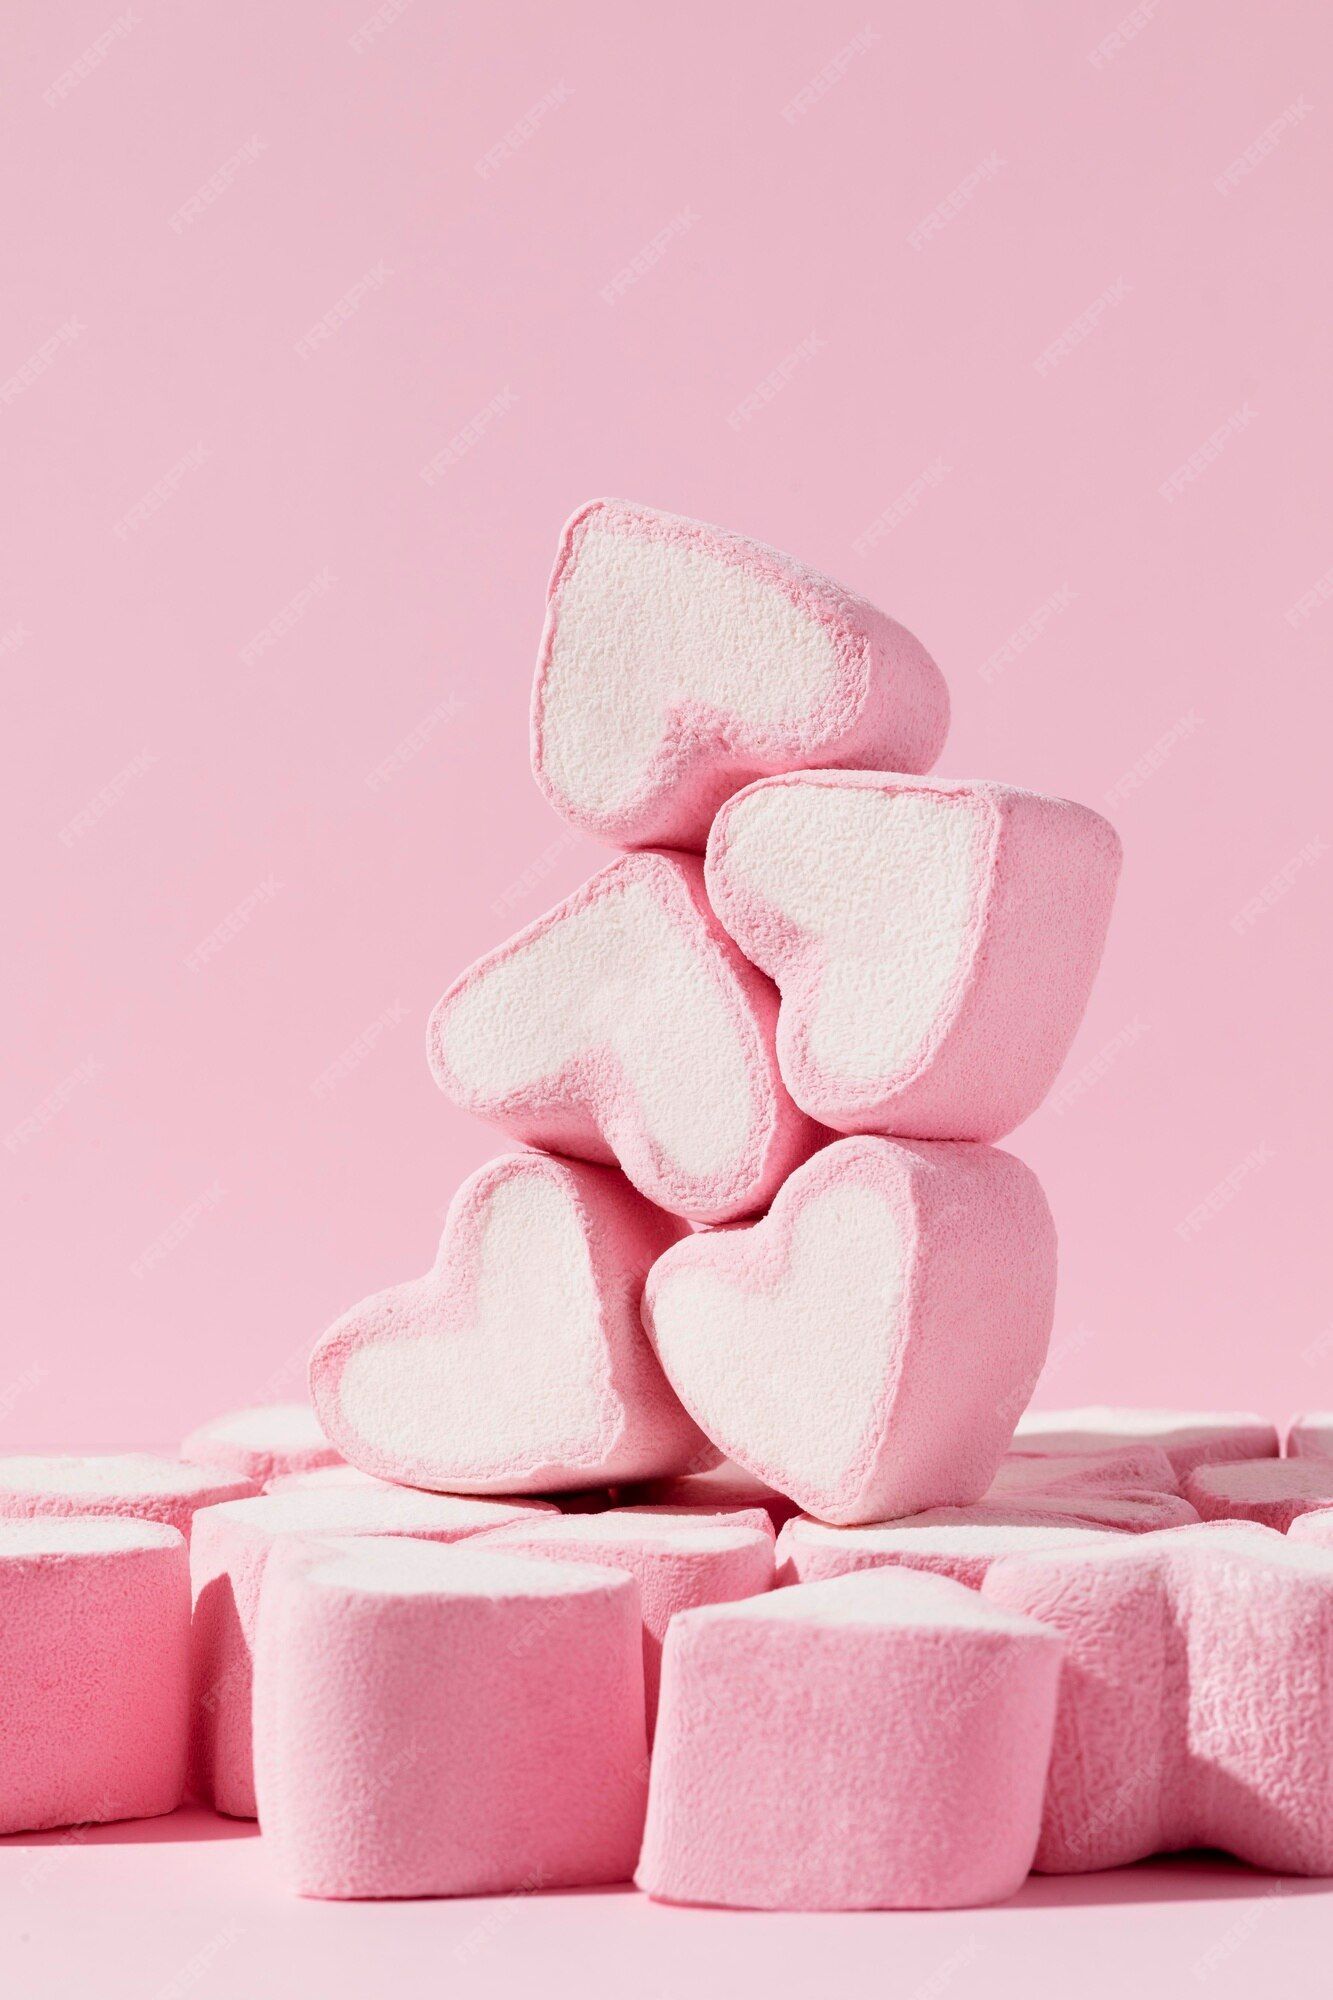 Pink Marshmallow Image